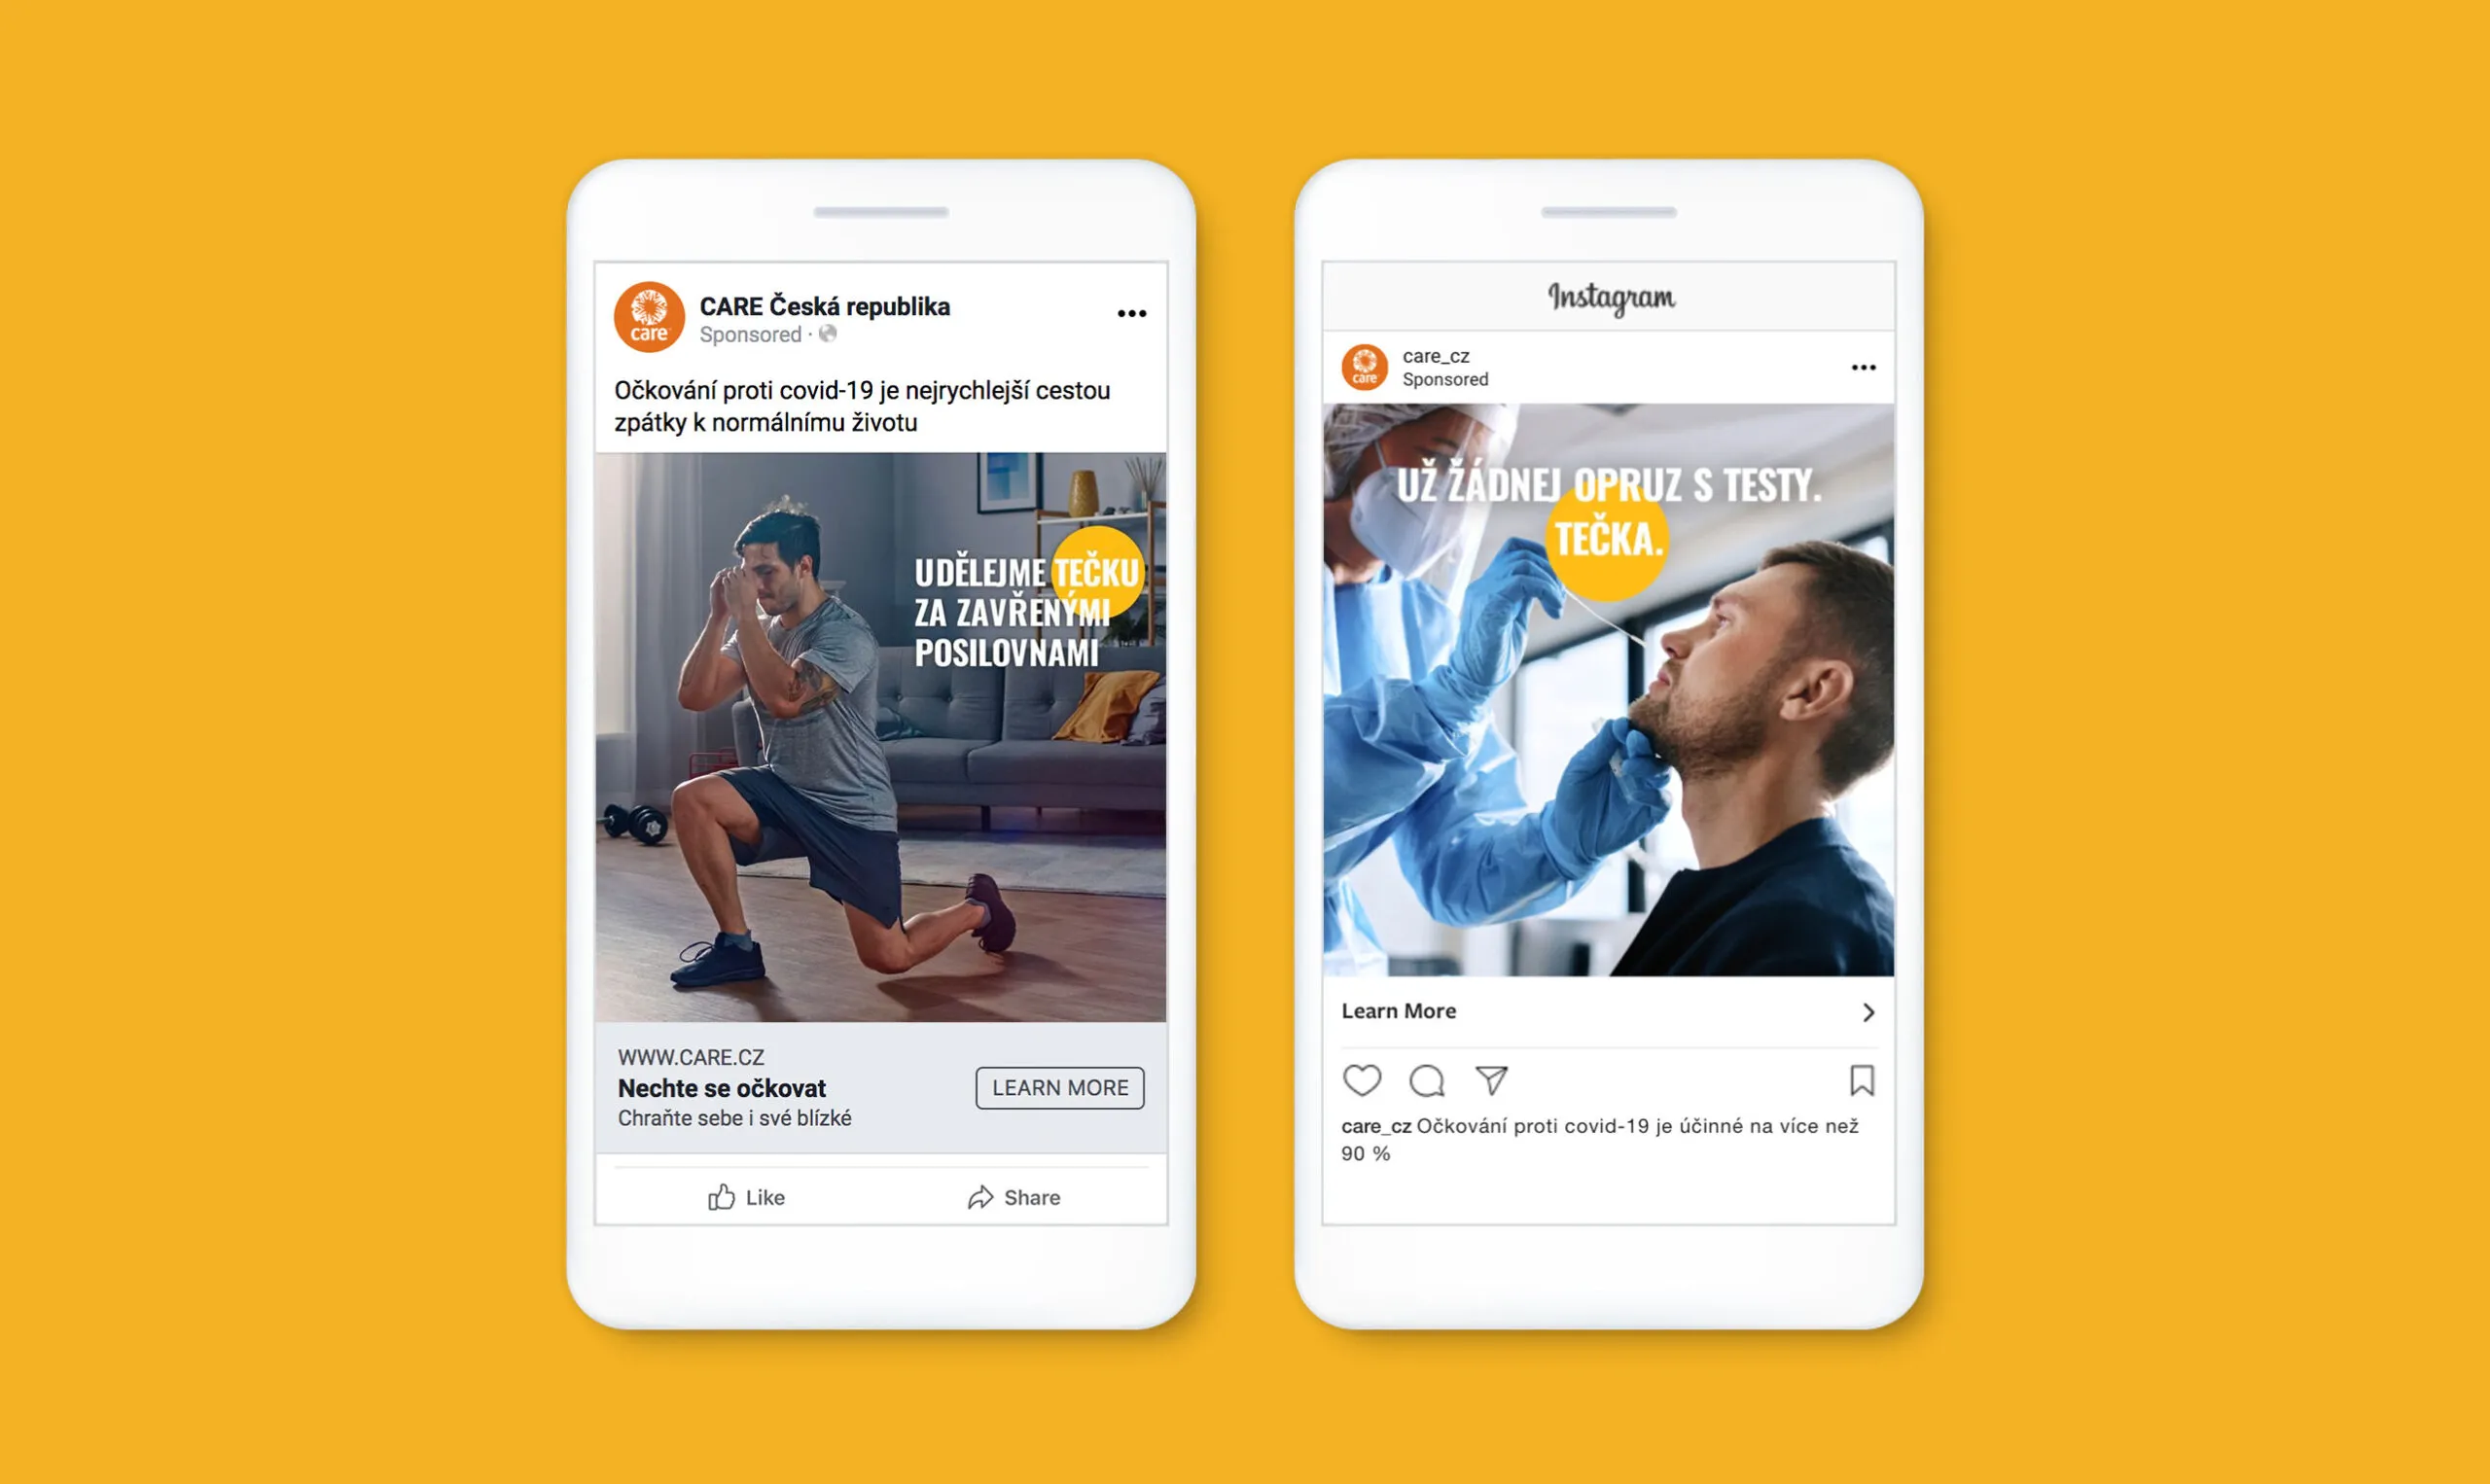 Une maquette de deux iPhones montrant des publications sur Facebook et Instagram encourageant les gens à se faire vacciner.